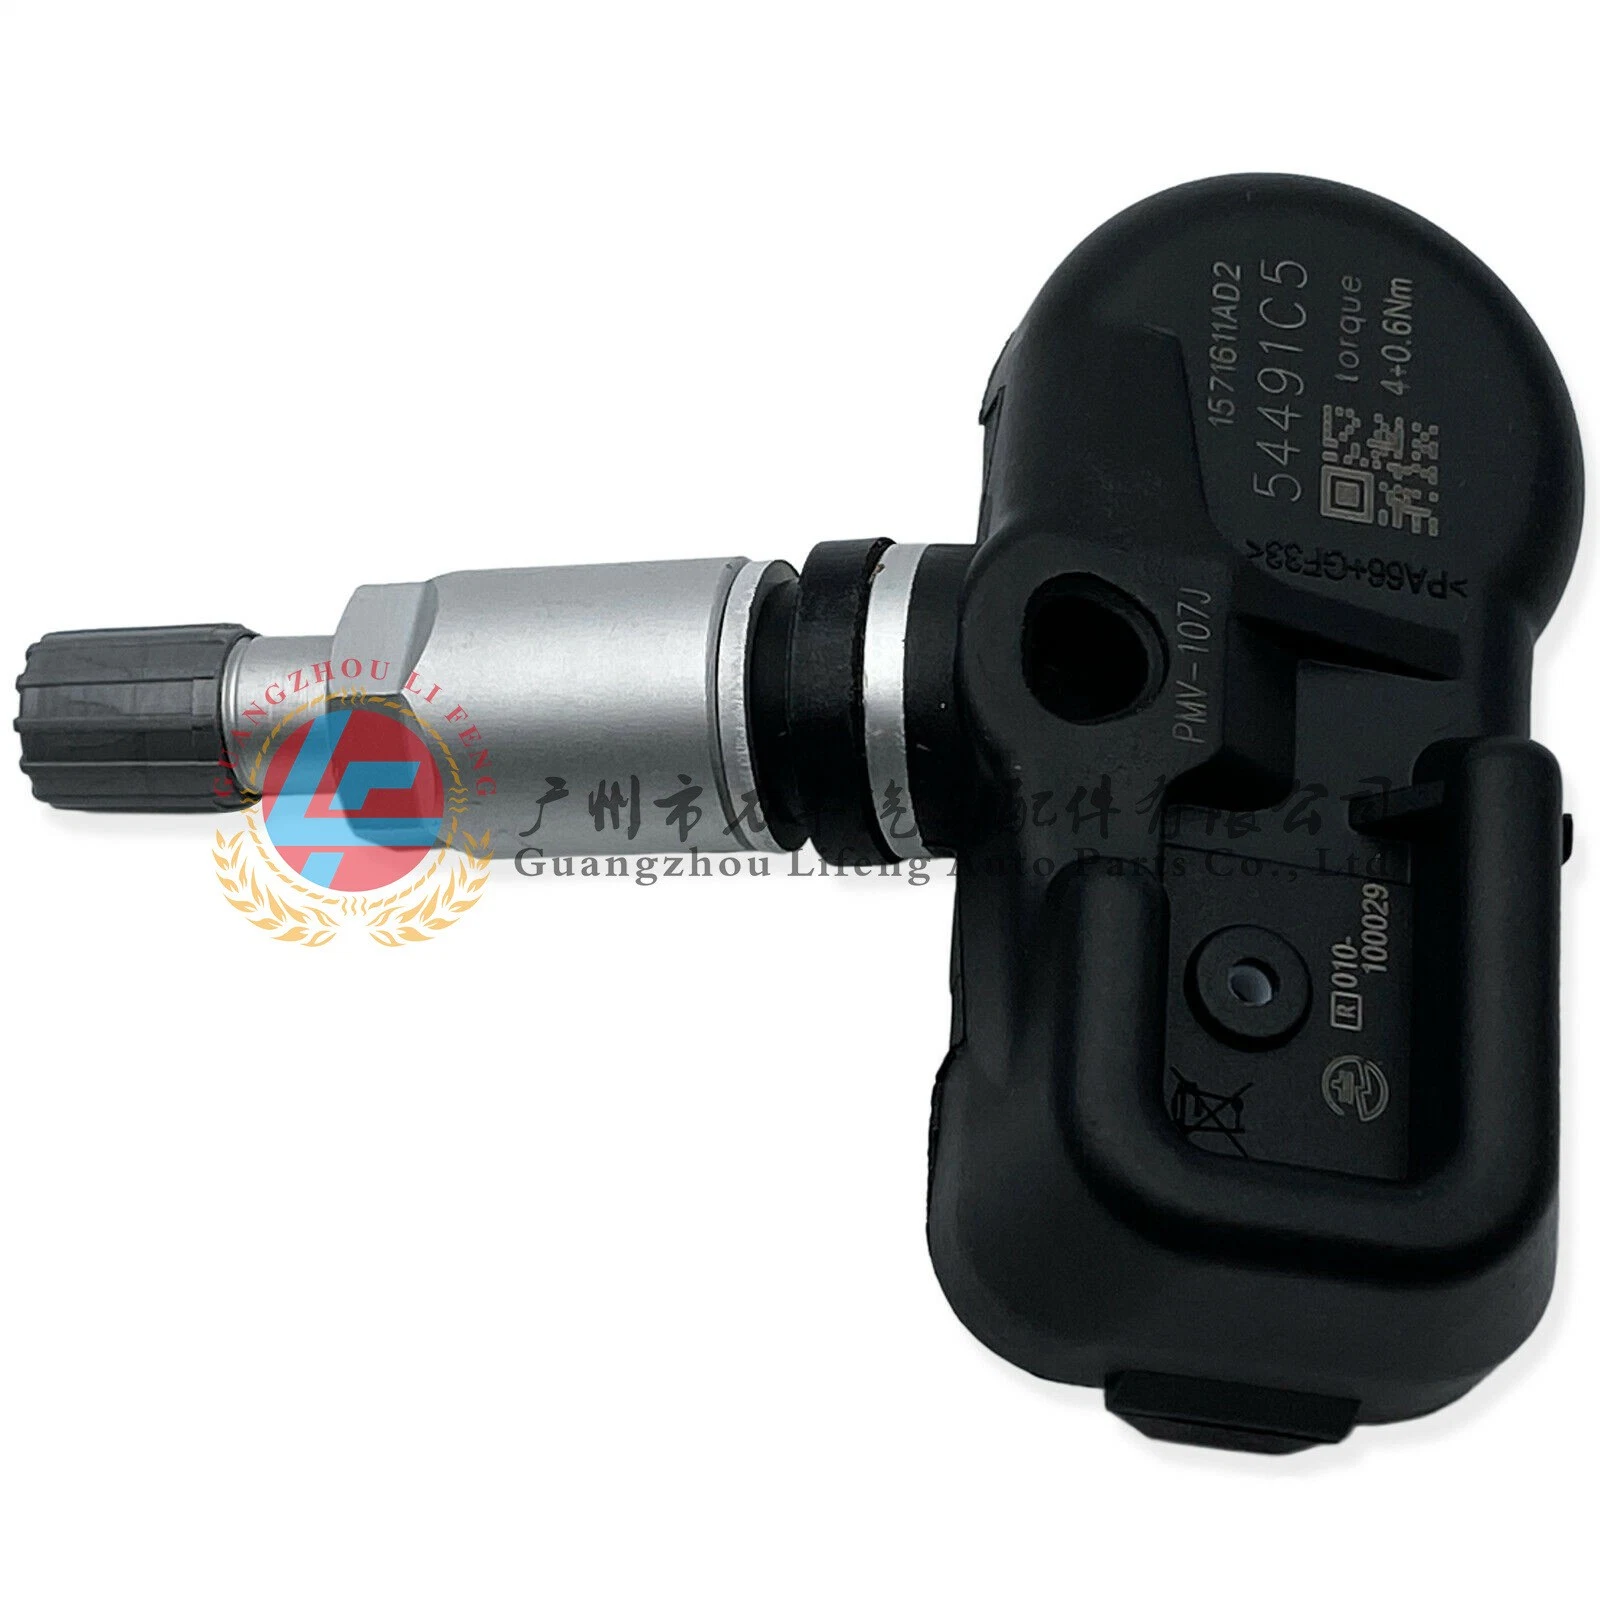 Sensor Artikelnummer 42607-30040 PMV-C010 ist geeignet für Camry Prado Und andere 4000 Raddrucküberwachung Autoreifen Drucksensor